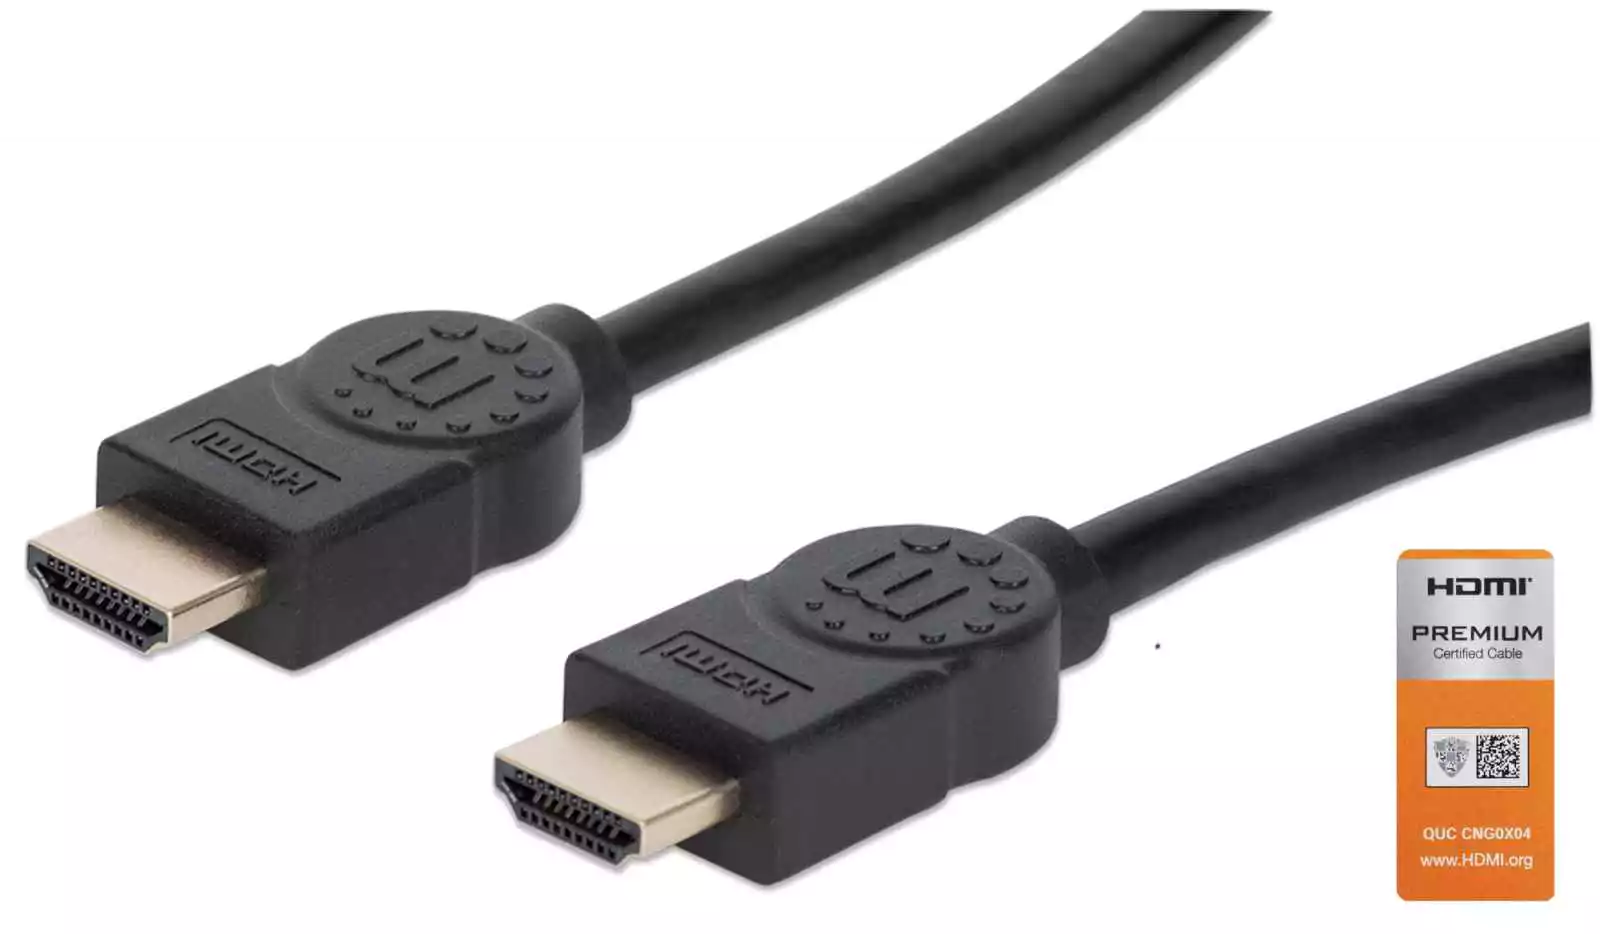 Cable HDMI 5 Metros PVC de alta velocidad y Calidad Color Negro